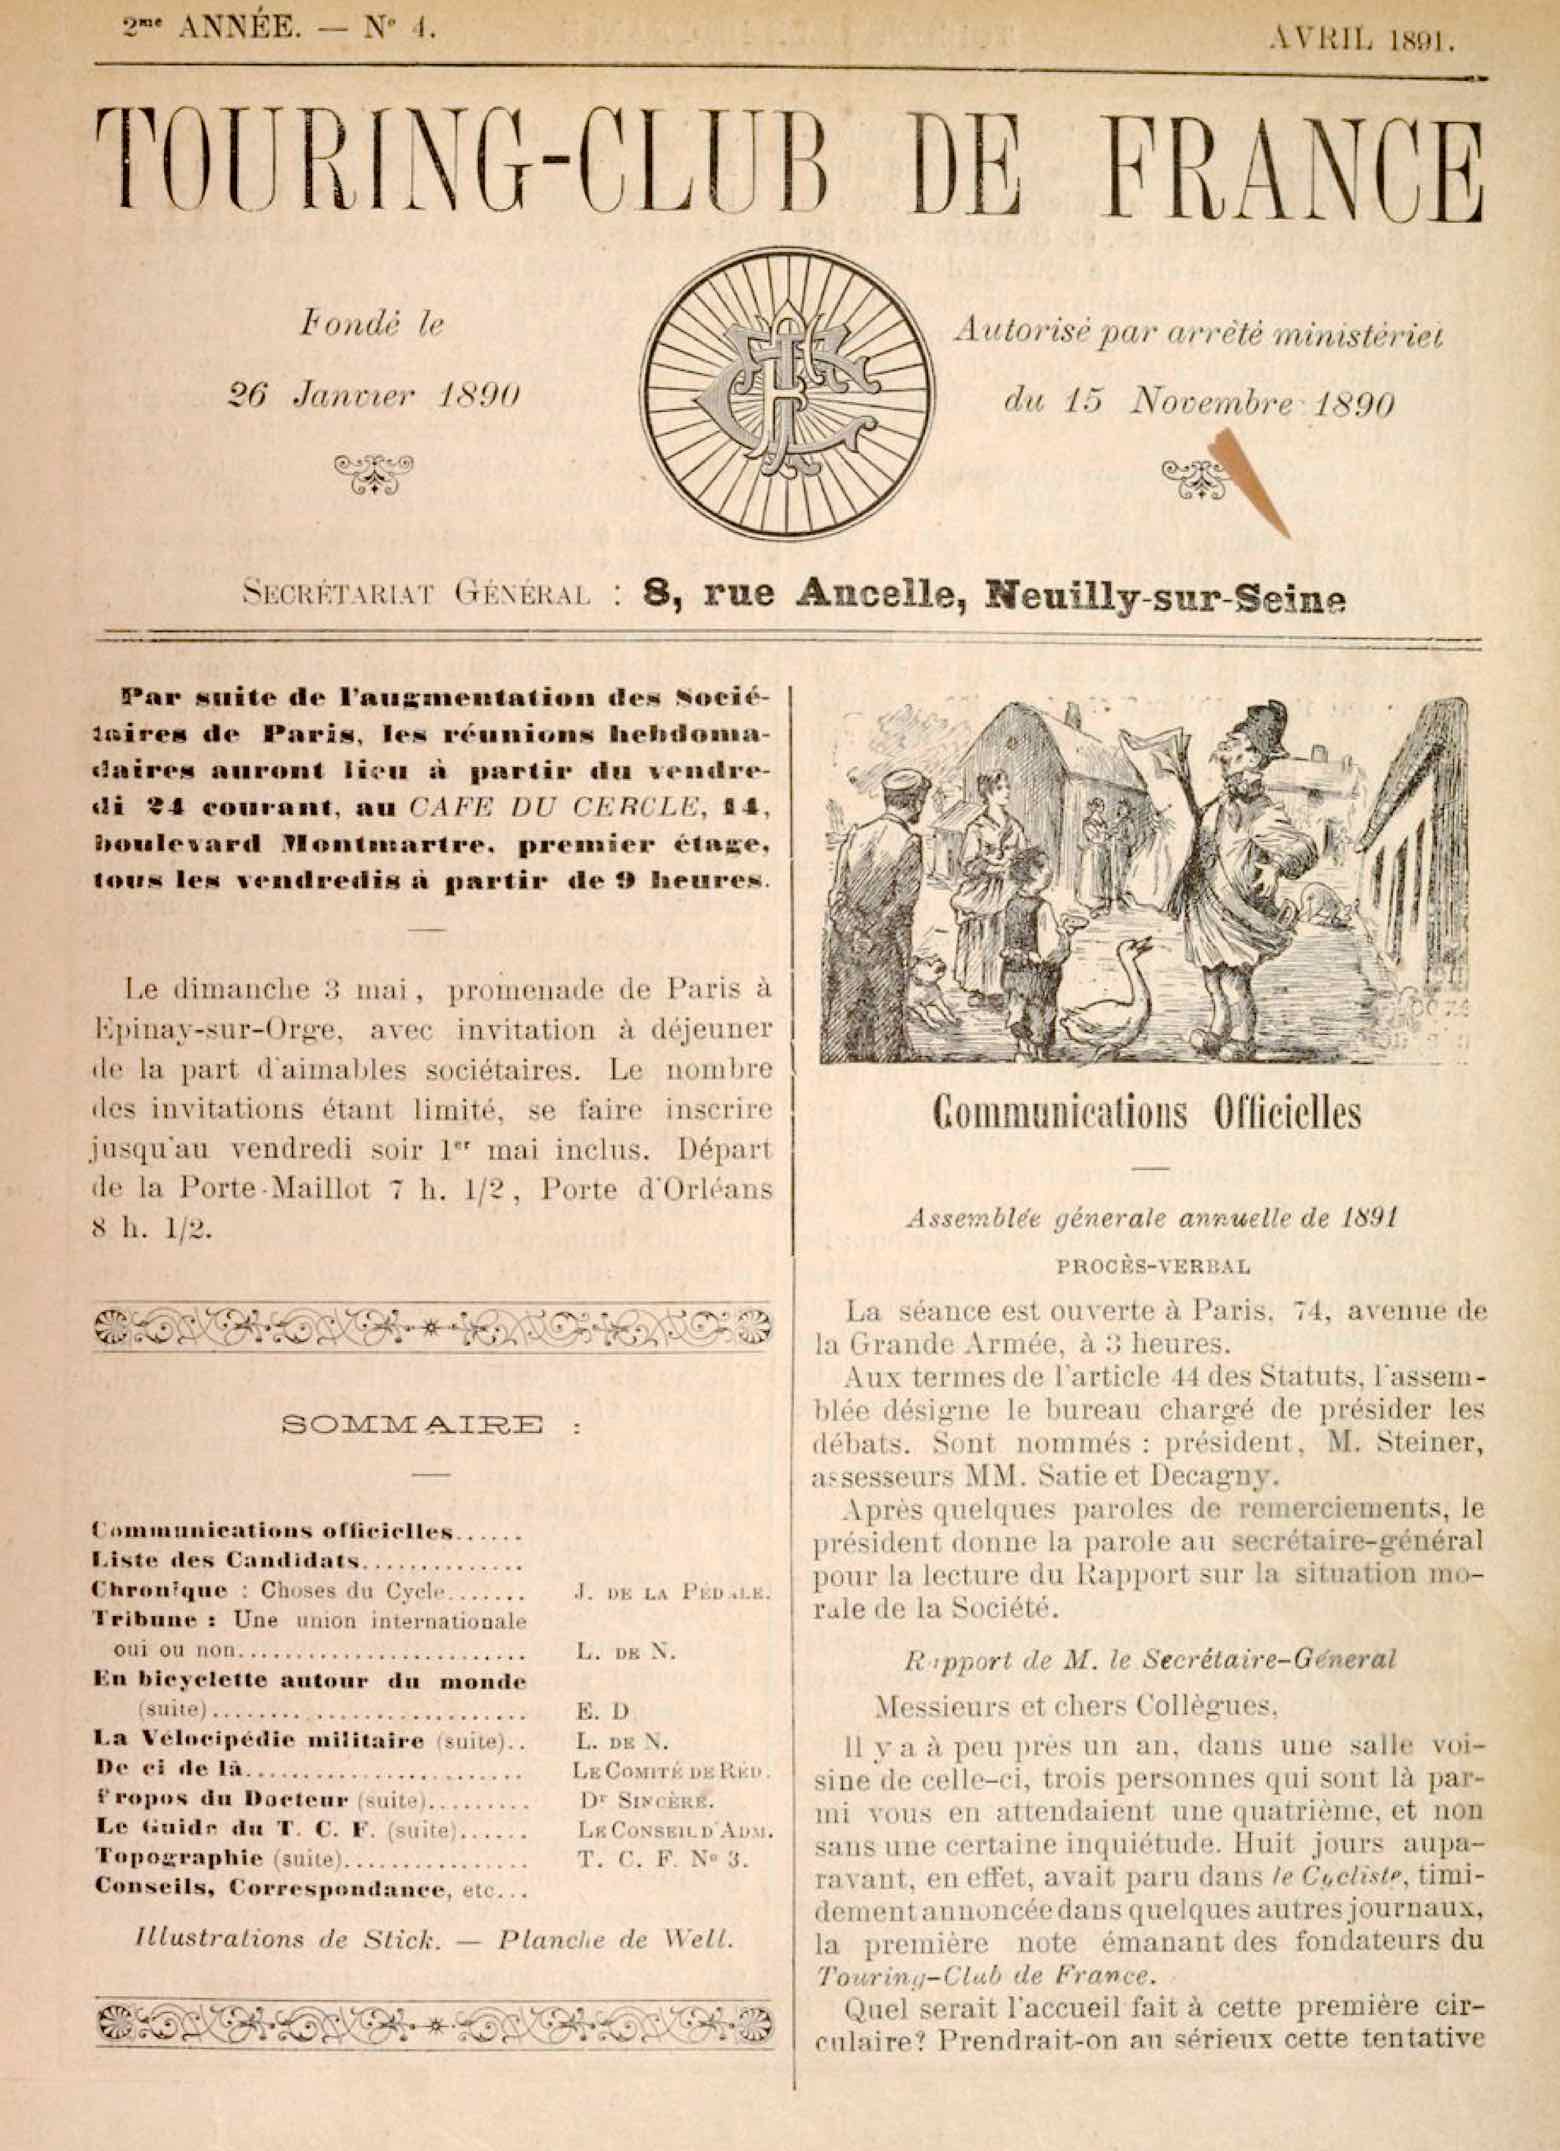 T.C.F. Revue Mensuelle April 1891 - Communications Officielles scan 1 main image